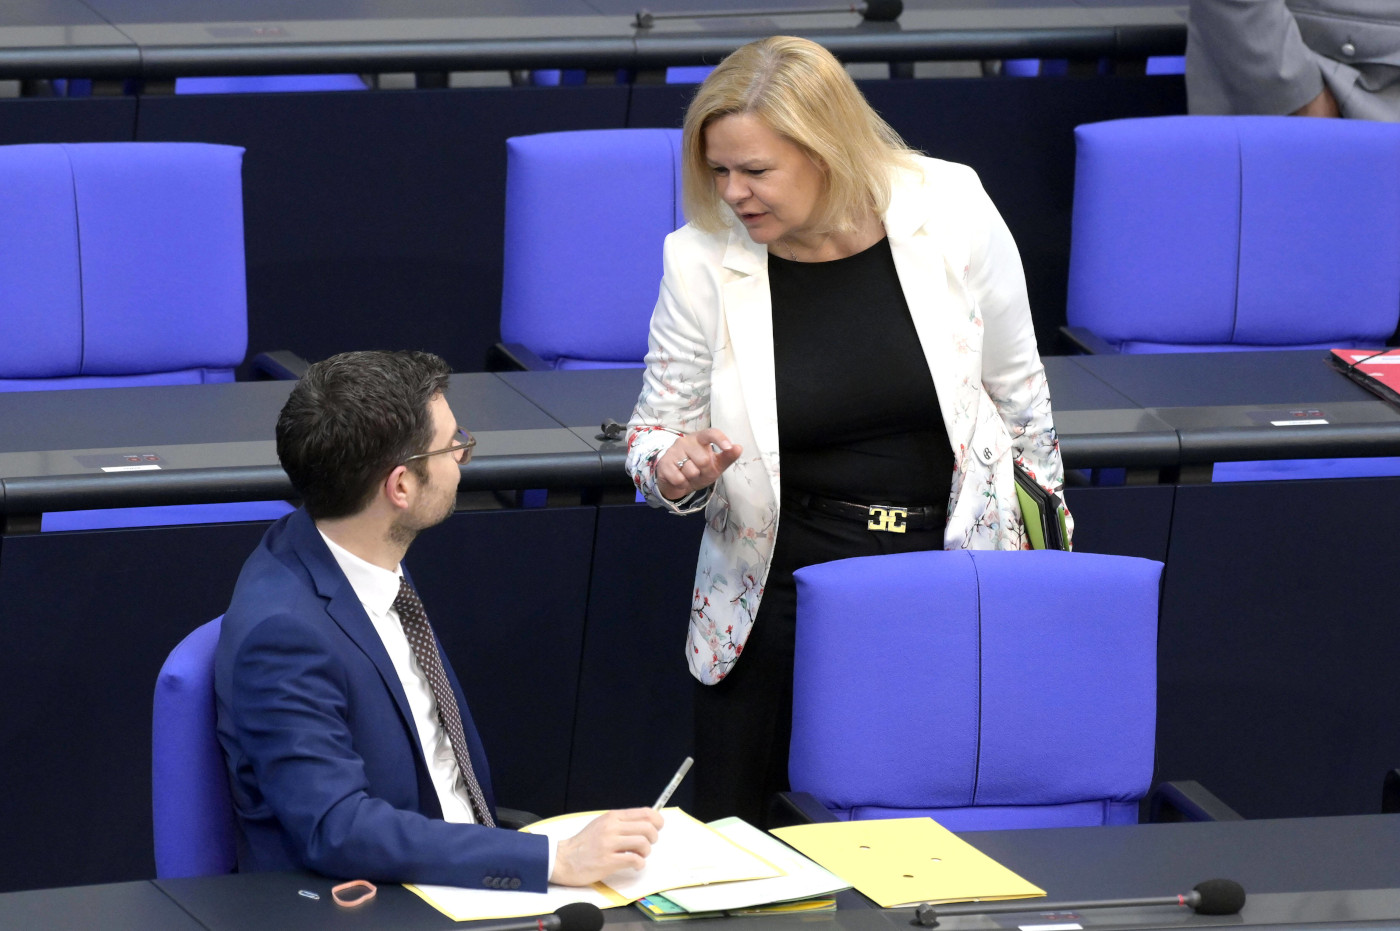 Das Foto zeigt Justizminster Marco Buschmann von der FPD und Innenministerin Nancy Faeser von der SPD gemeinsam im Bundestag. Sie unterhalten sich.